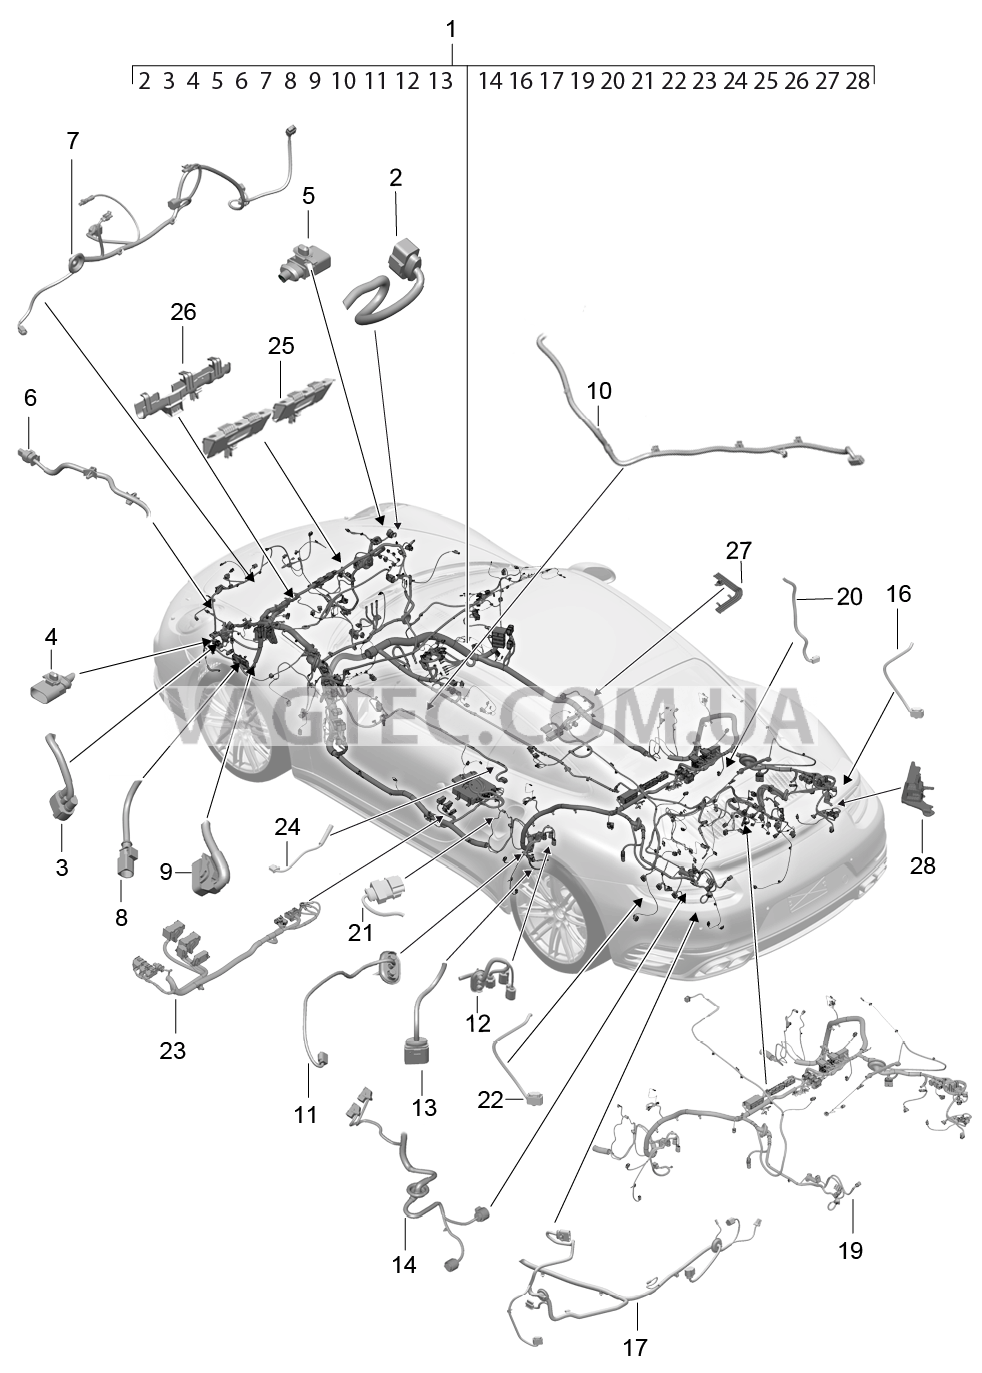 902-013 Жгуты проводов, Салон, и, Сегмент детали для PORSCHE Porsche991Turbo 2014-2017USA